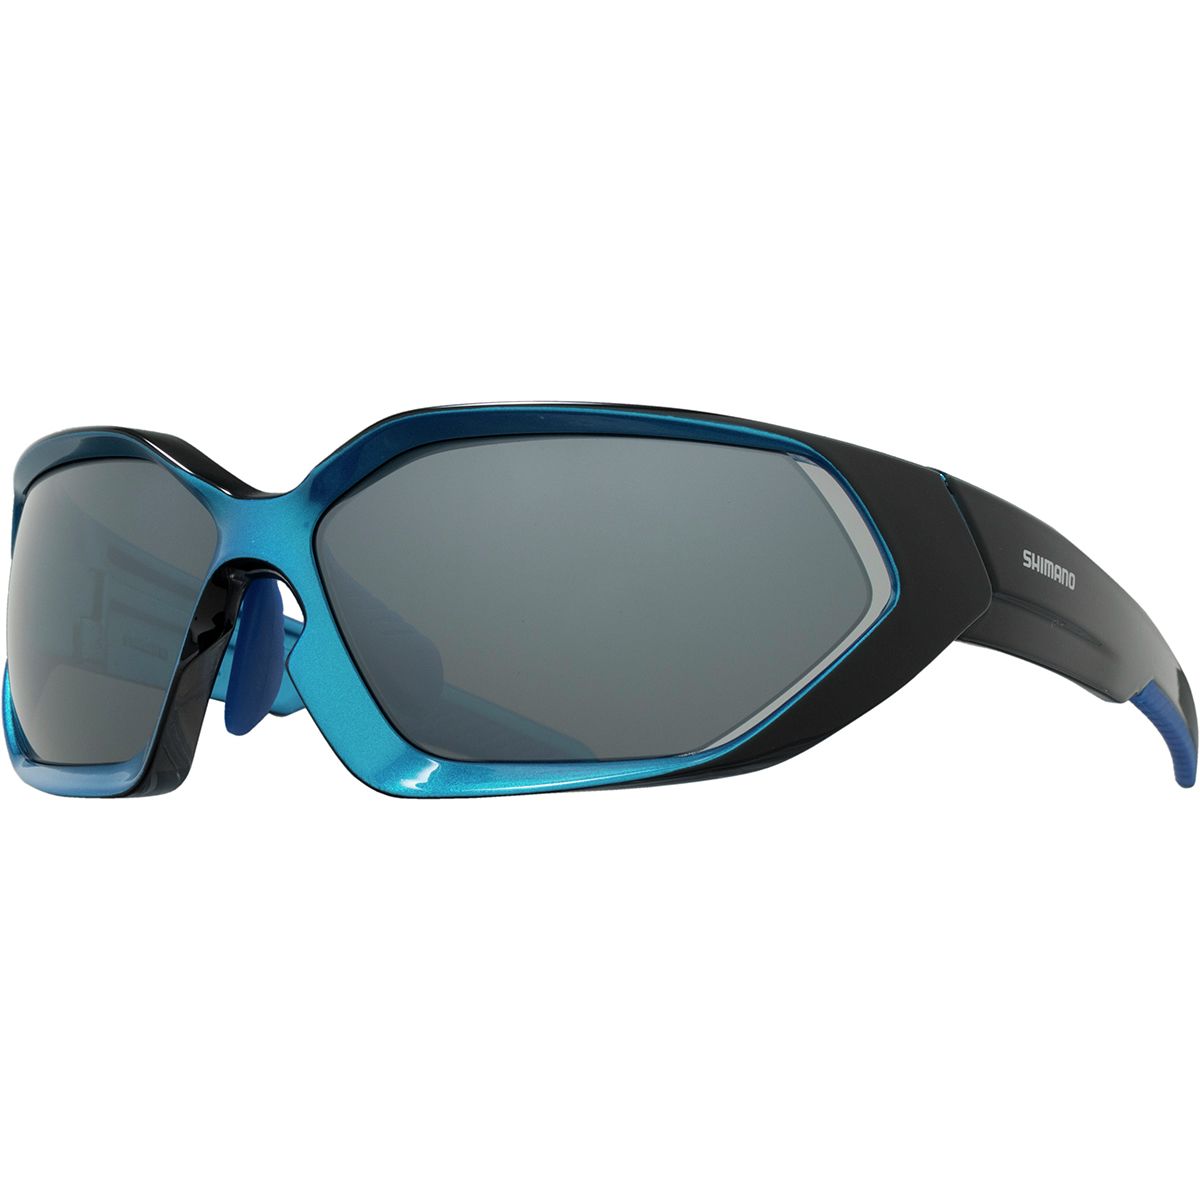 Shimano CE-S51X Cycling Sunglasses - Men's